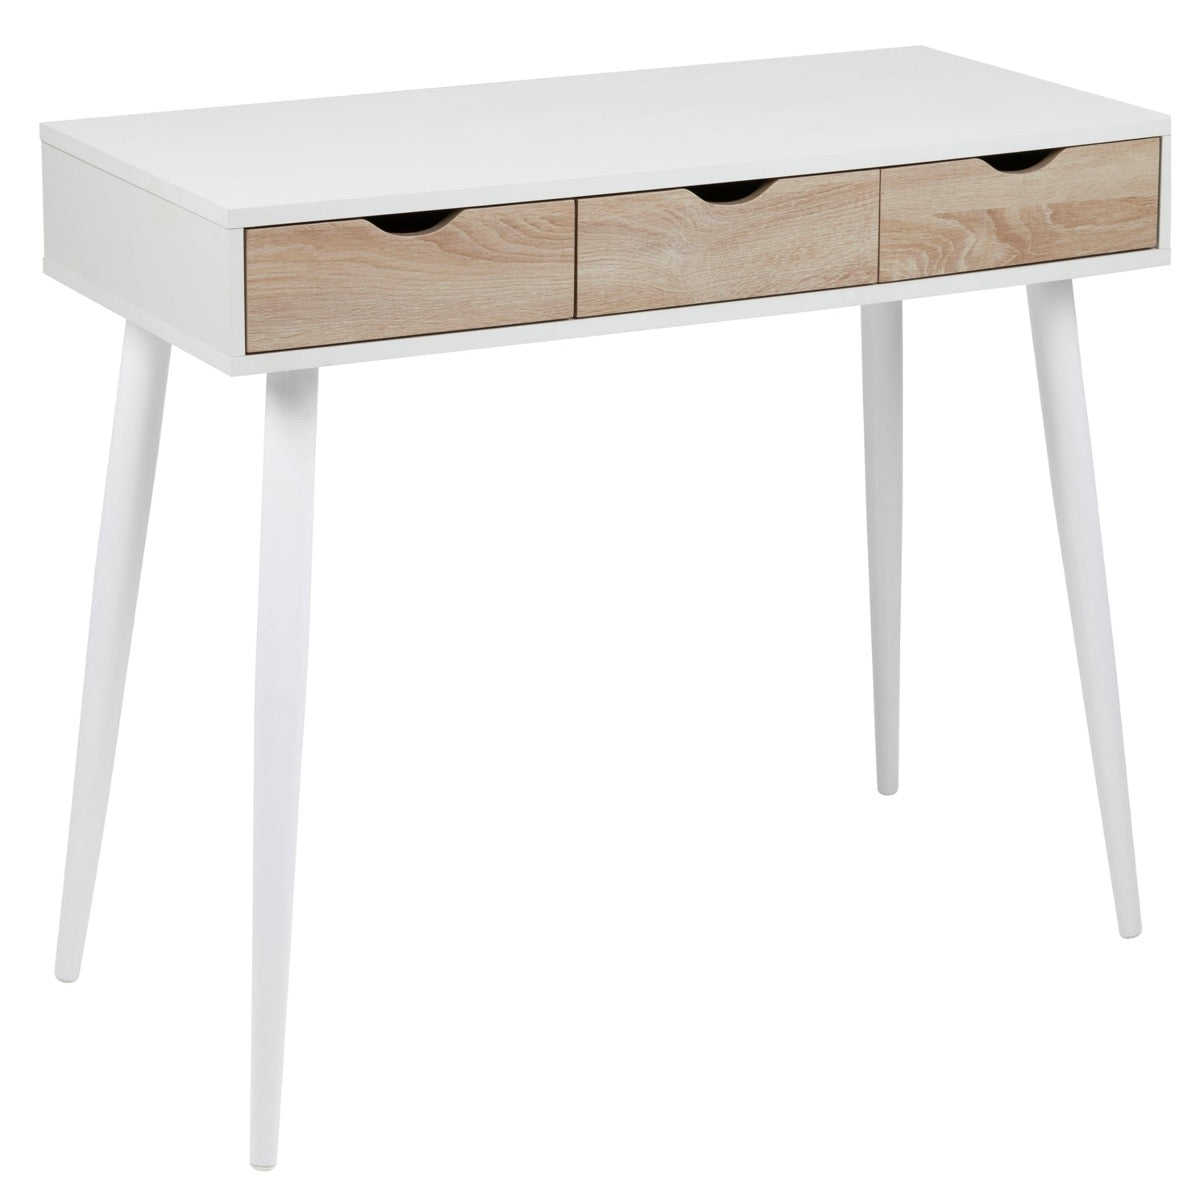 Møbler til kontoret? Vi har designer stole og borde tagged "skriveborde" – Nordly Living